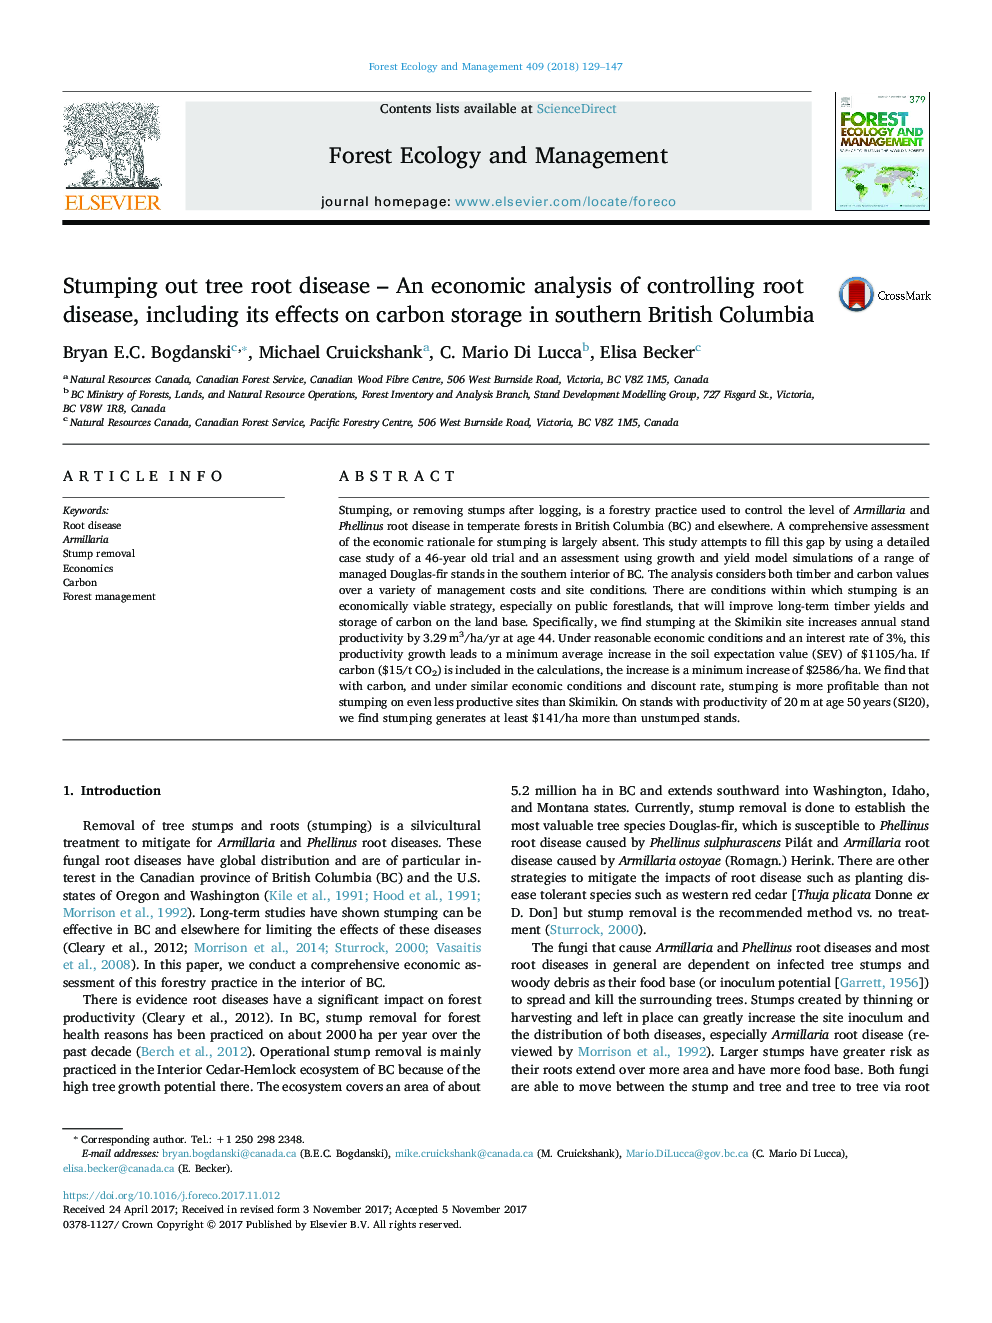 ریشه بیماری درختی - تجزیه و تحلیل اقتصادی کنترل بیماری ریشه، از جمله اثرات آن بر ذخیره کربن در جنوب بریتیش کلمبیا 